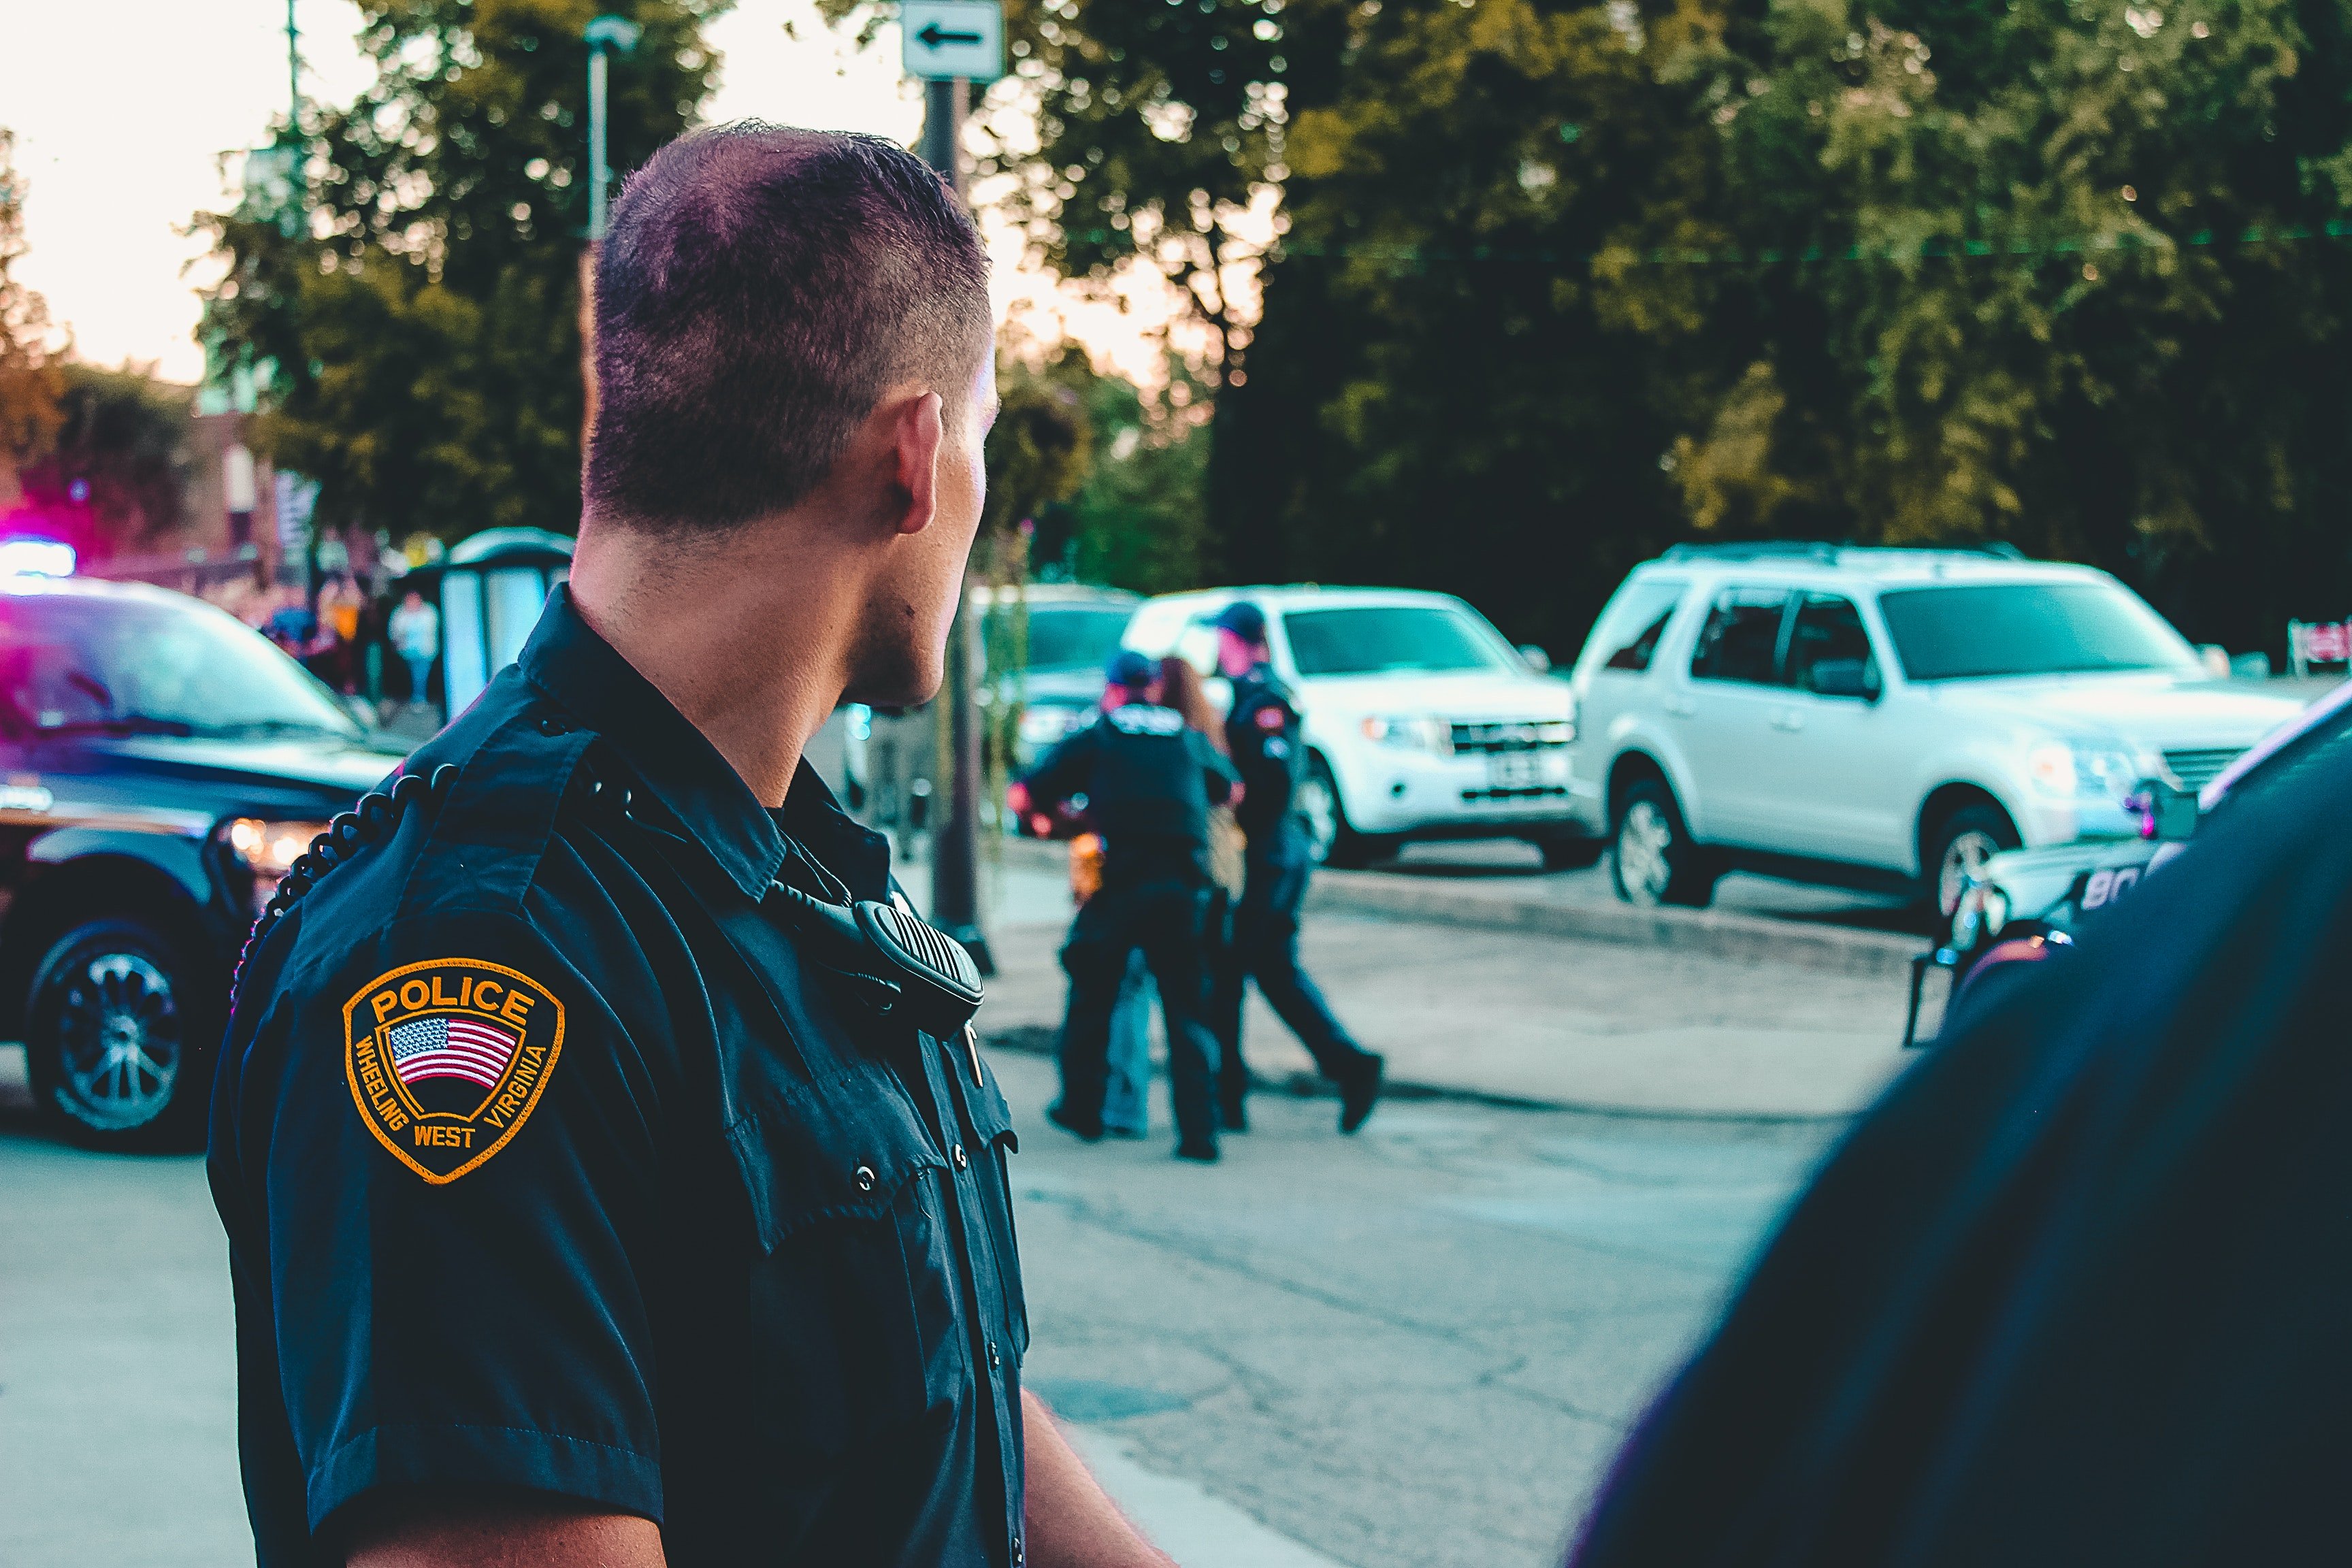 Polizist beobachtet Passanten | Quelle: Pexels